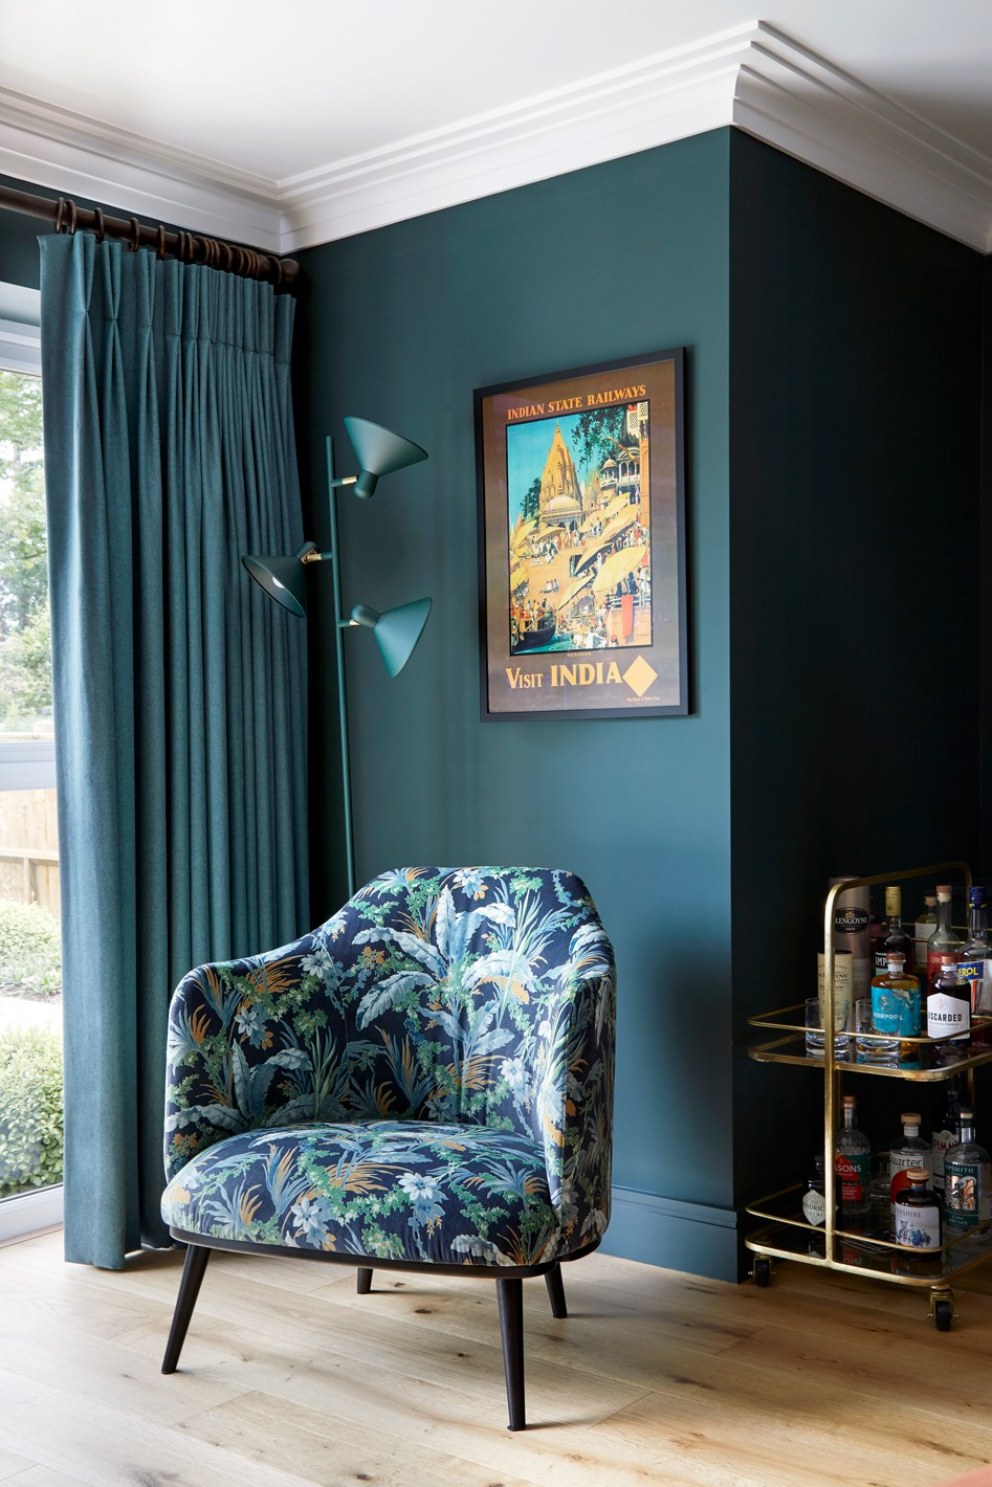 Wargrave Road | Wargrave living room | Interior Designers